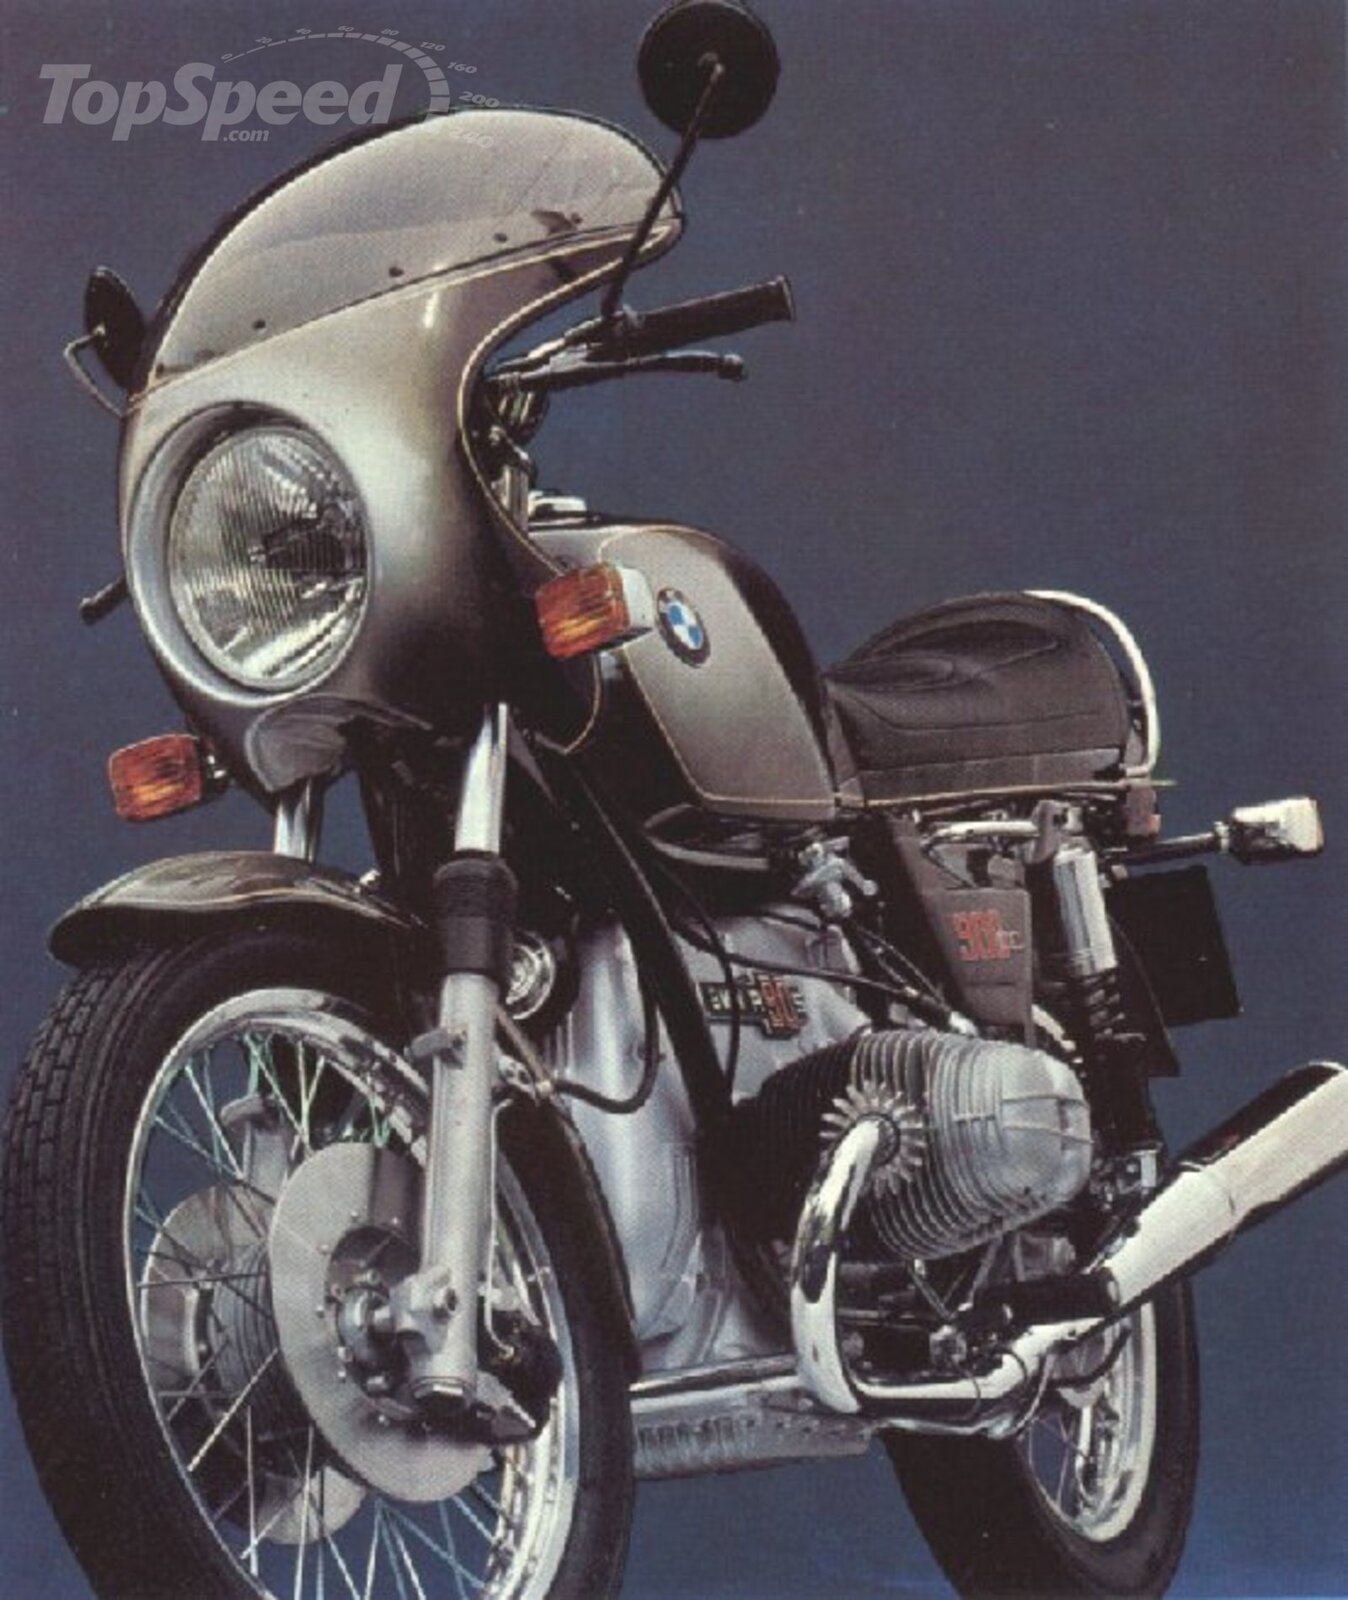 1973-bmw-r90s-1_1600x0w (1).jpg